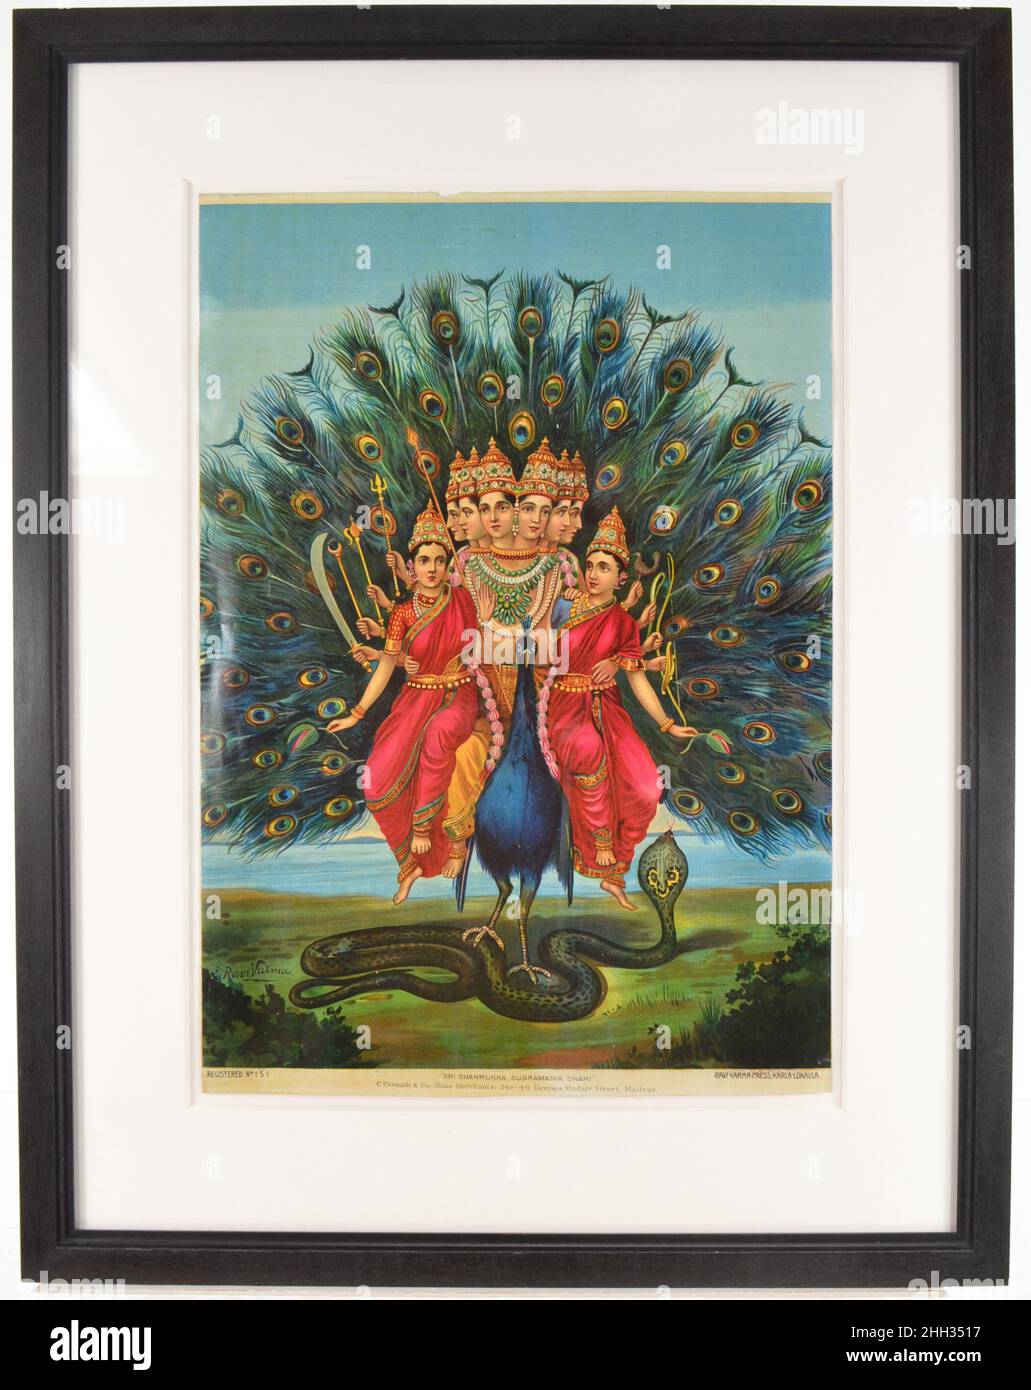 Shri Shanmukha Subramania Swami ca. 1900–15 India il primo figlio di Shiva e Parvati è Skanda, il dio della guerra, nato da Shiva e dal grembo di Parvati (una storia complicata). Il suo nome può essere letto in modo credibile come un “salto”, un’azione associata sia ai giovani virili in combattimento che al monte favorito da Skanda, il pavone. Ha assunto molti epiteti, da Kartikya nel nord-ovest a Muragan (‘devine giovani’) e, come qui, Suprahmanya (‘pio, caro a Brahmans’) nel sud. In questa stampa riccamente colorata, ha assunto un titolo molto favorito a Tamil Nadu, Shanmukha (‘six-fronted’) Foto Stock